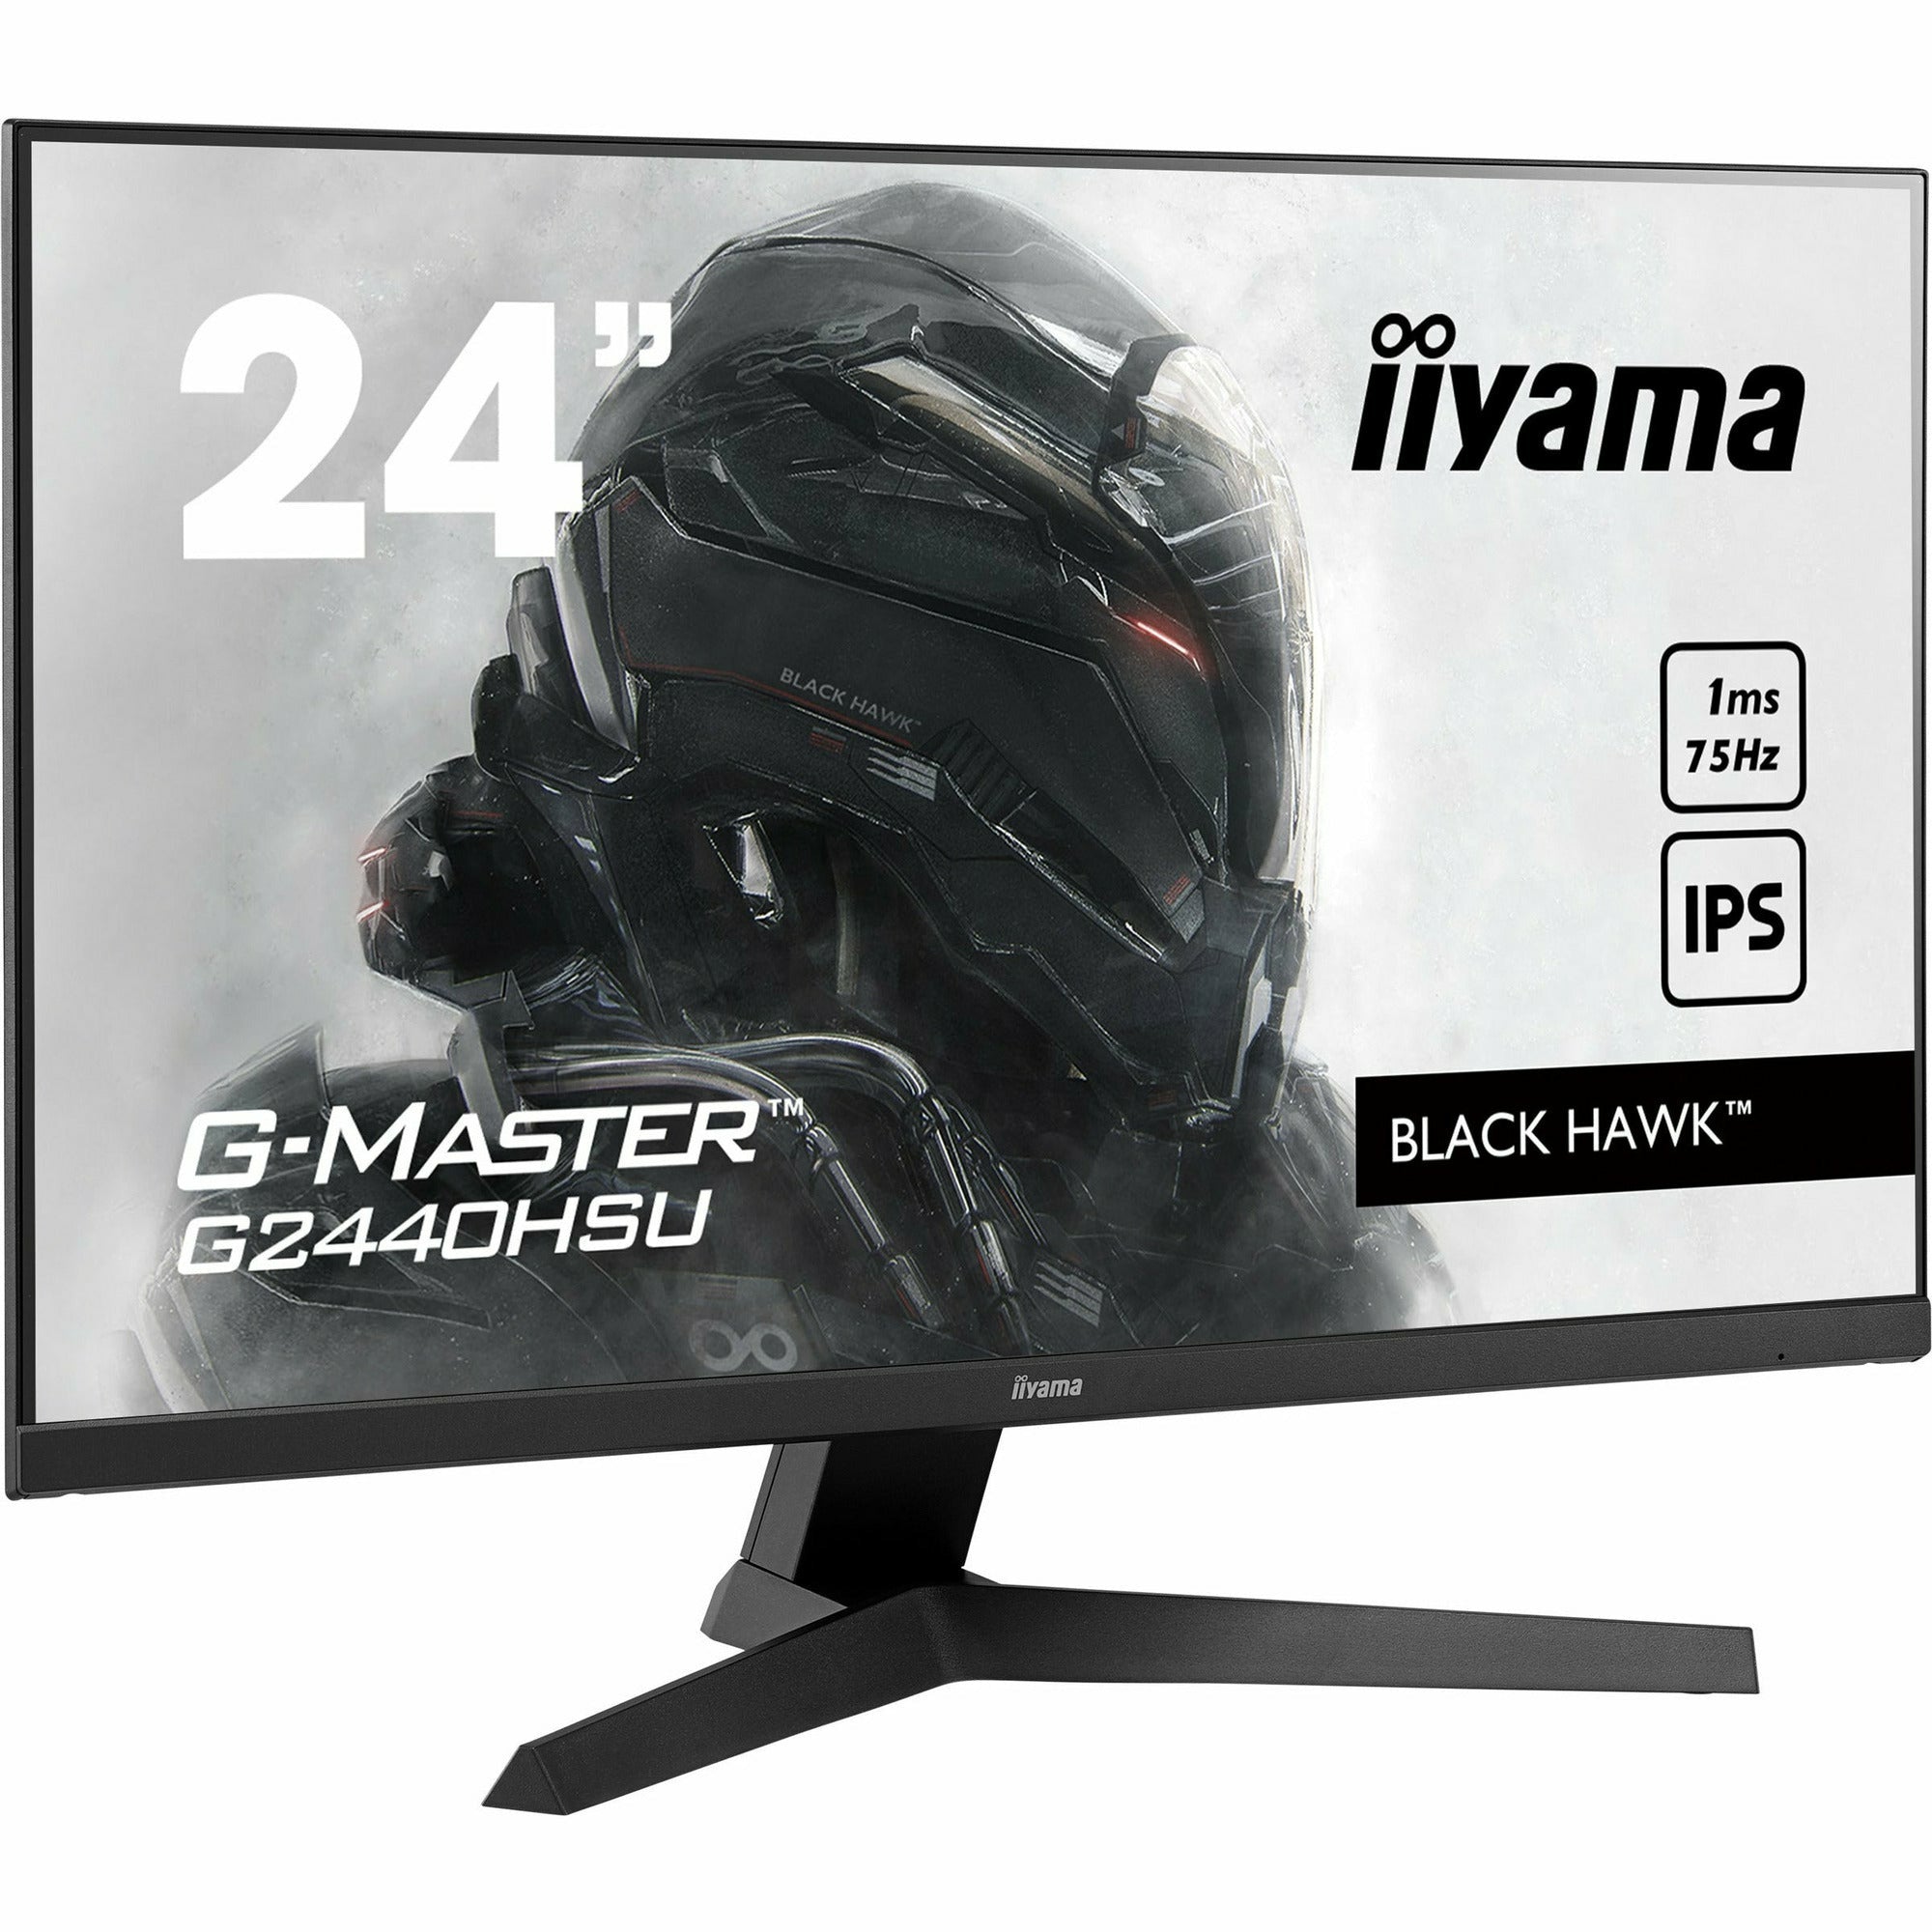 iiyama G-Master G2440HSU-B1 24" Black Hawk Gaming Monitor